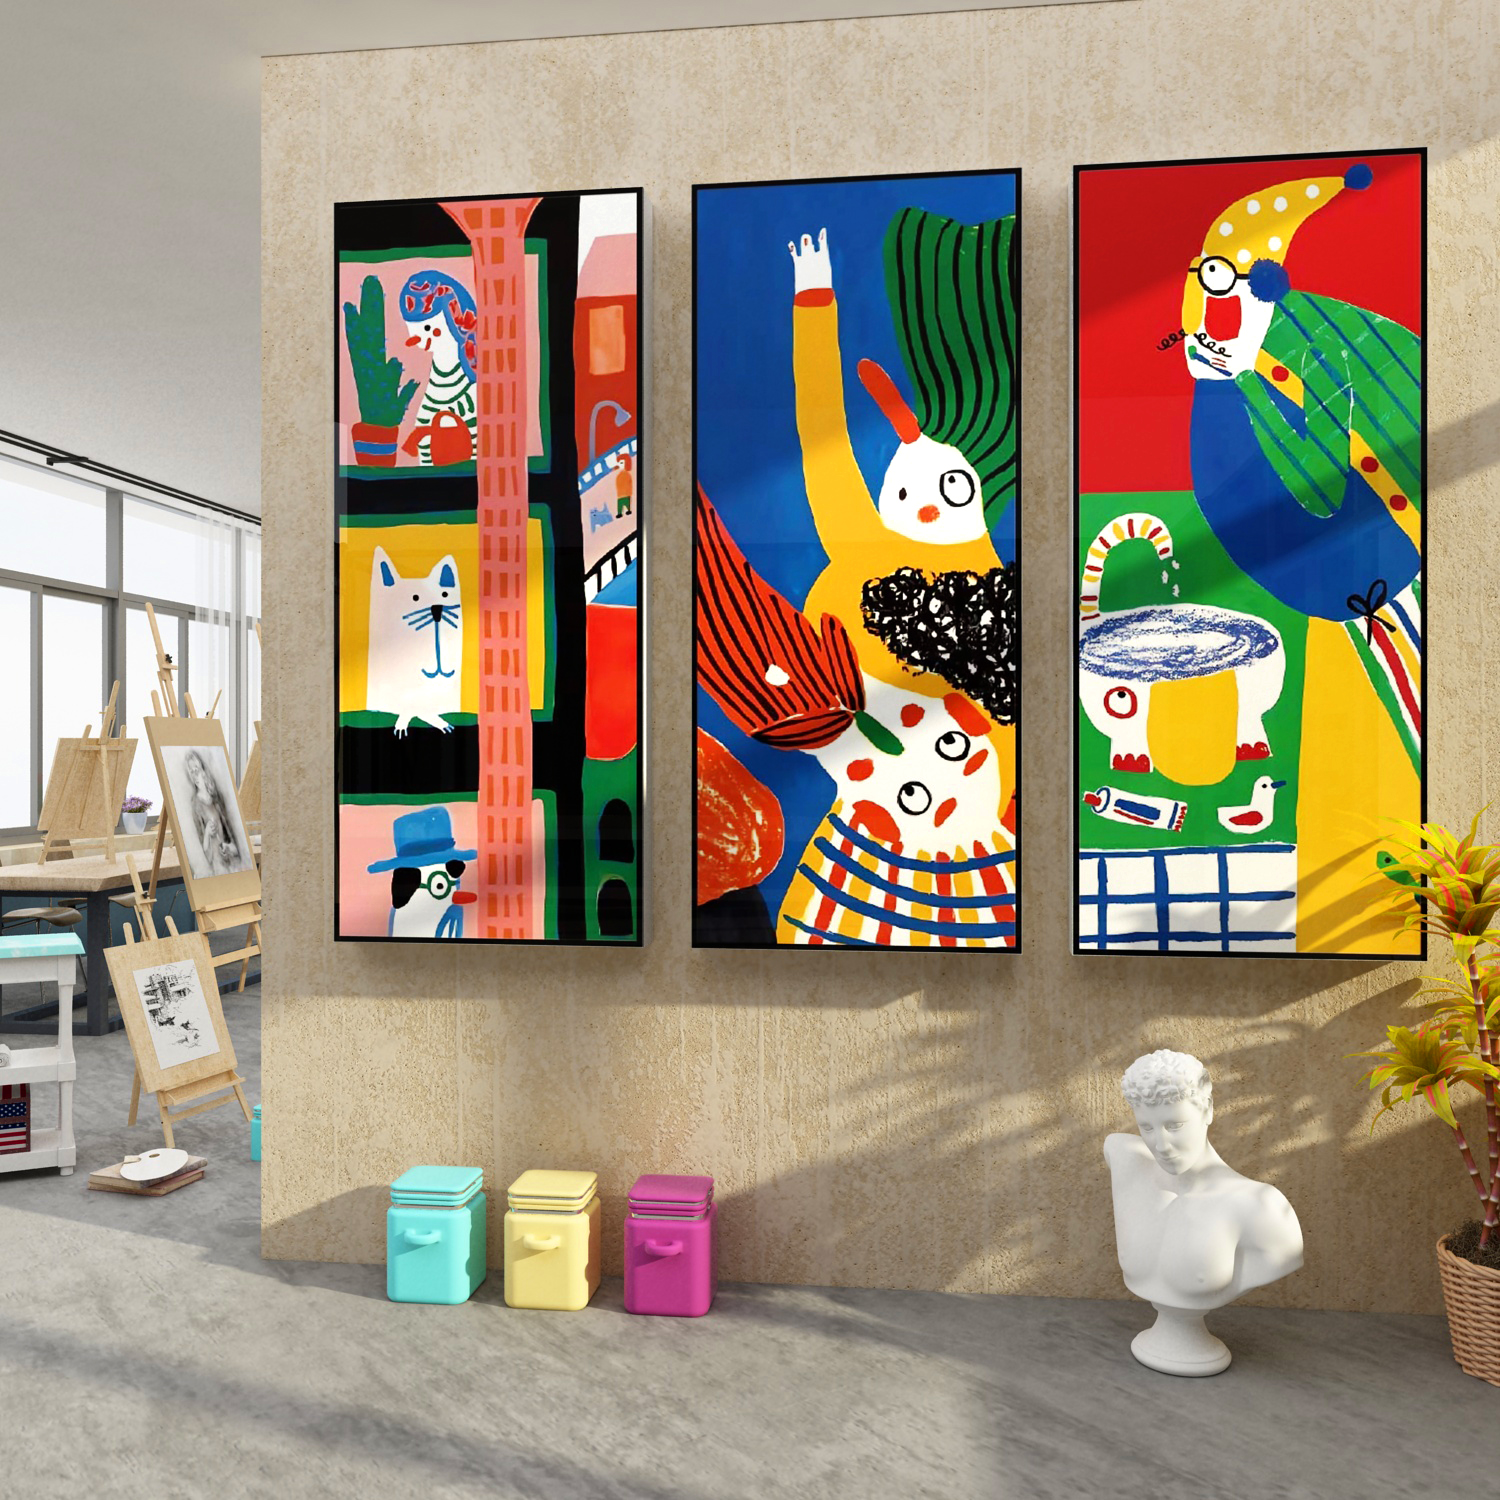 画室布置美术室素描班级墙面装饰文化环创贴纸幼儿园教育培训机构 - 图1